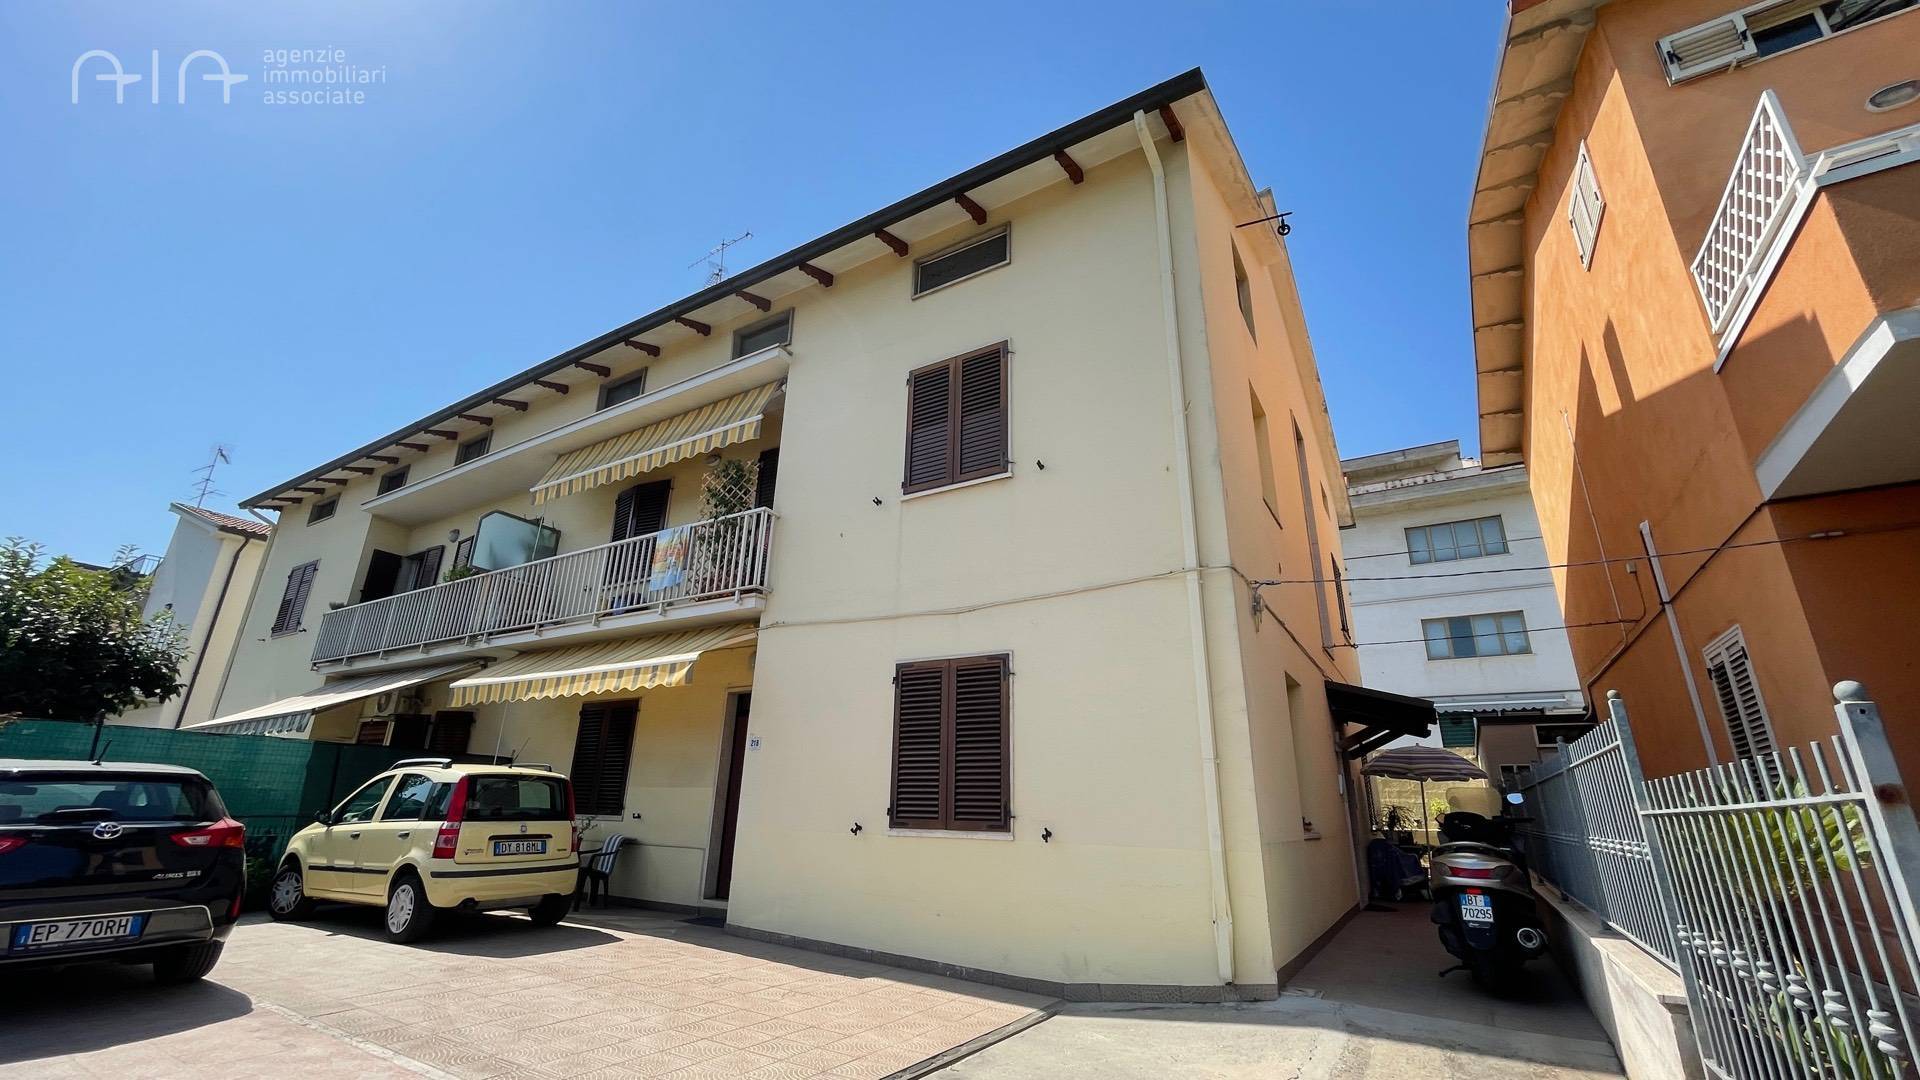 Casa indipendente con posto auto scoperto a San Benedetto del Tronto - porto d'ascoli residenziale (al di sopra della ss1 - 01